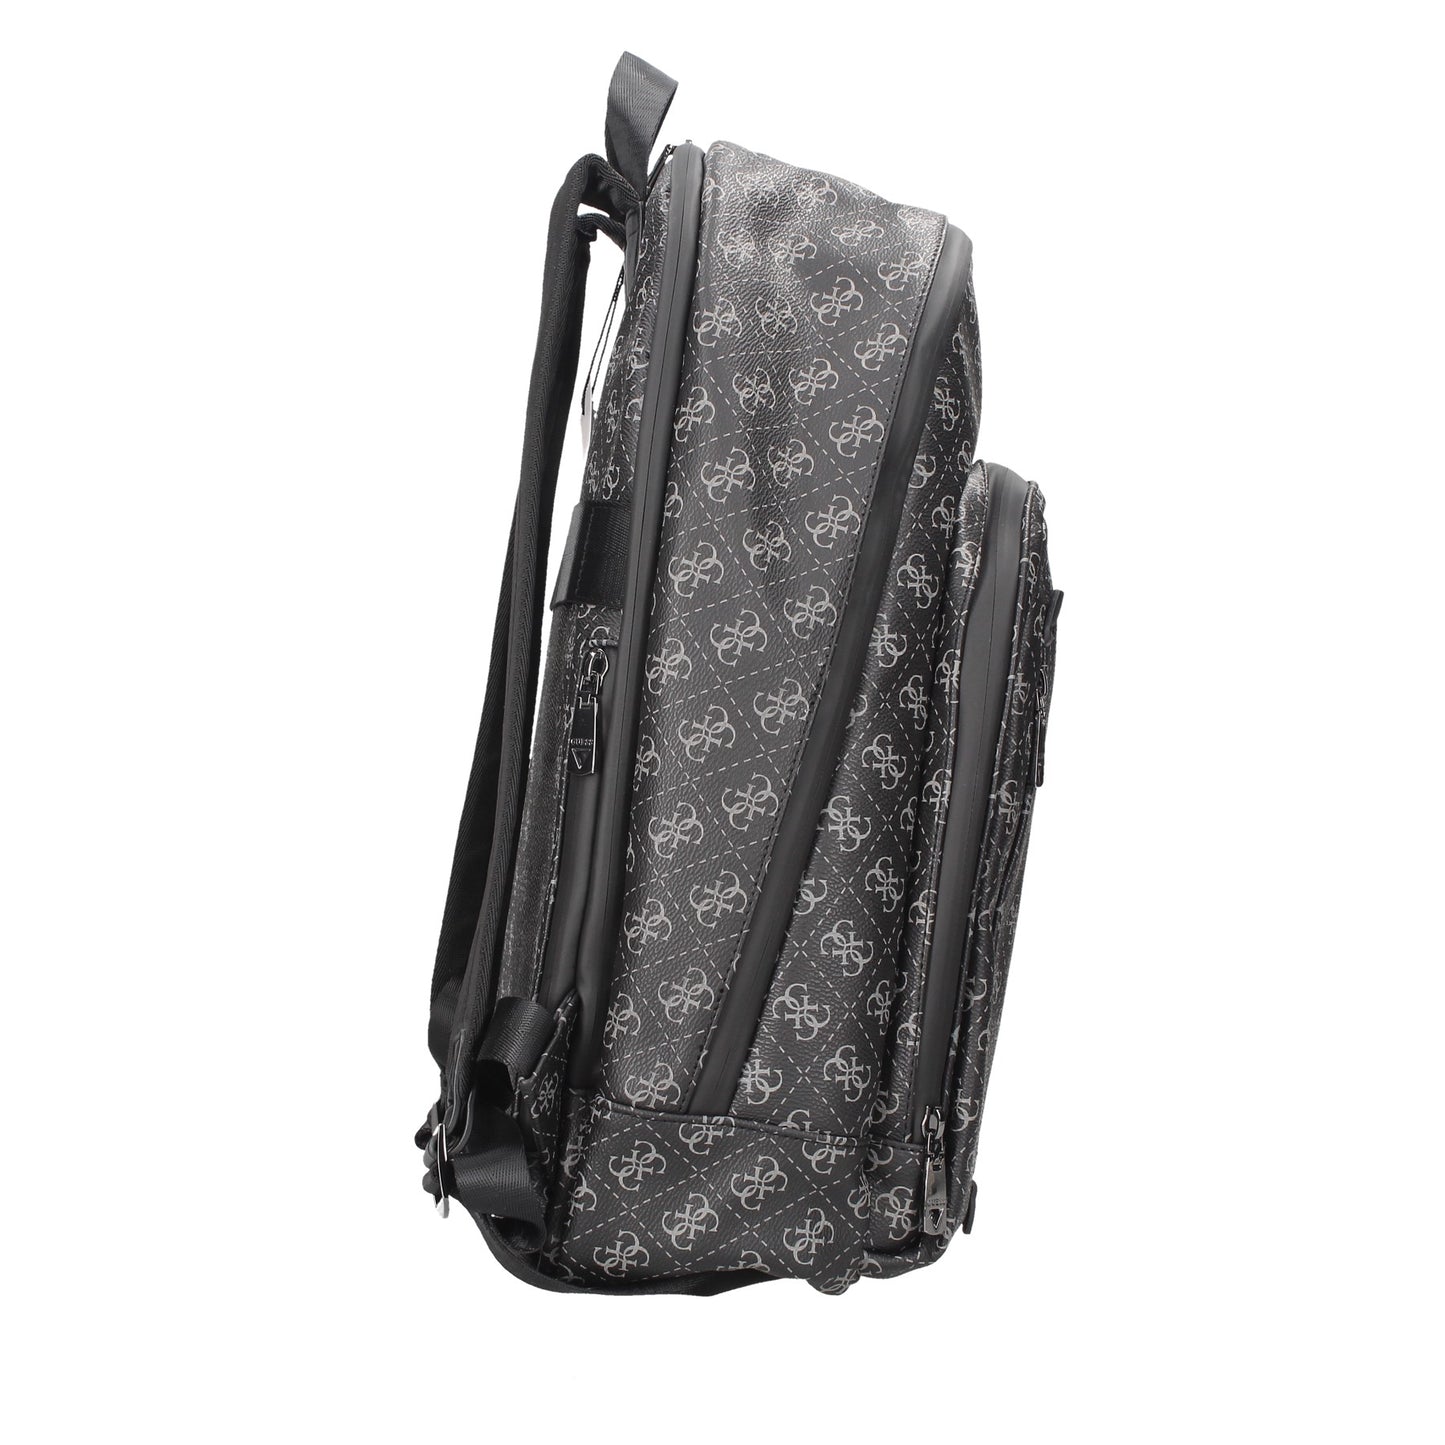 HMEVZLP3241 GUESS backpack